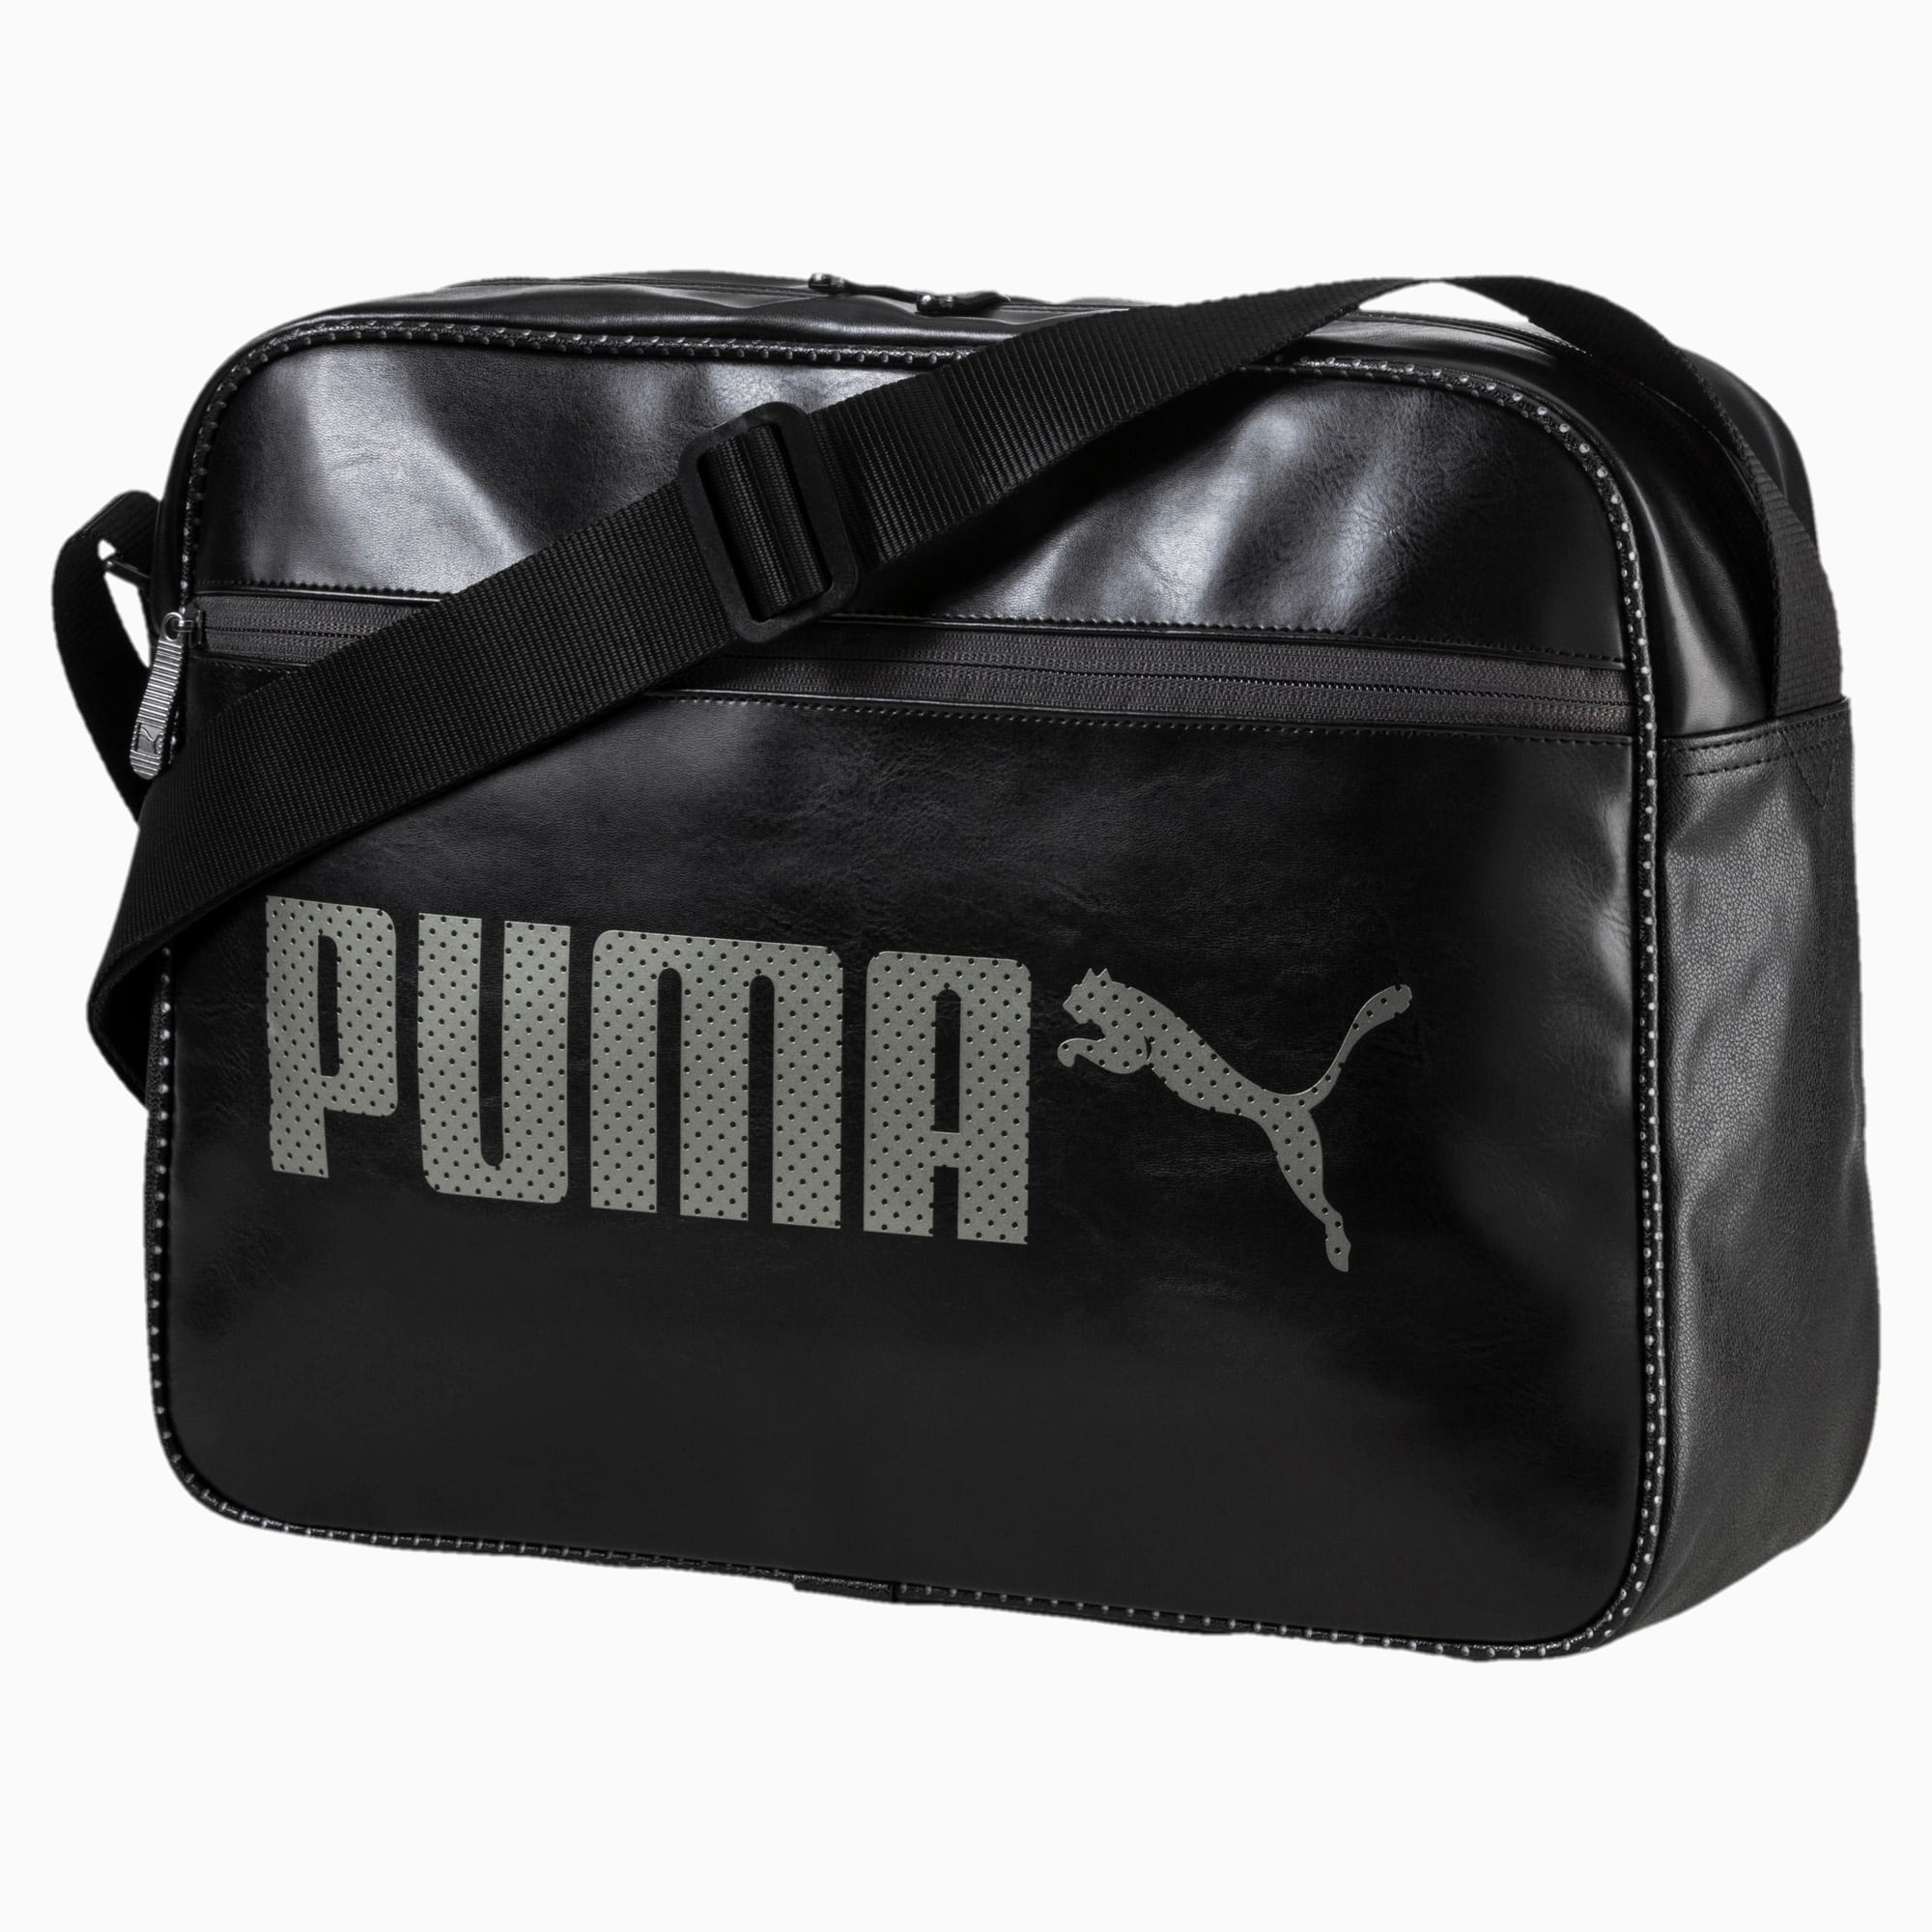 puma campus bag